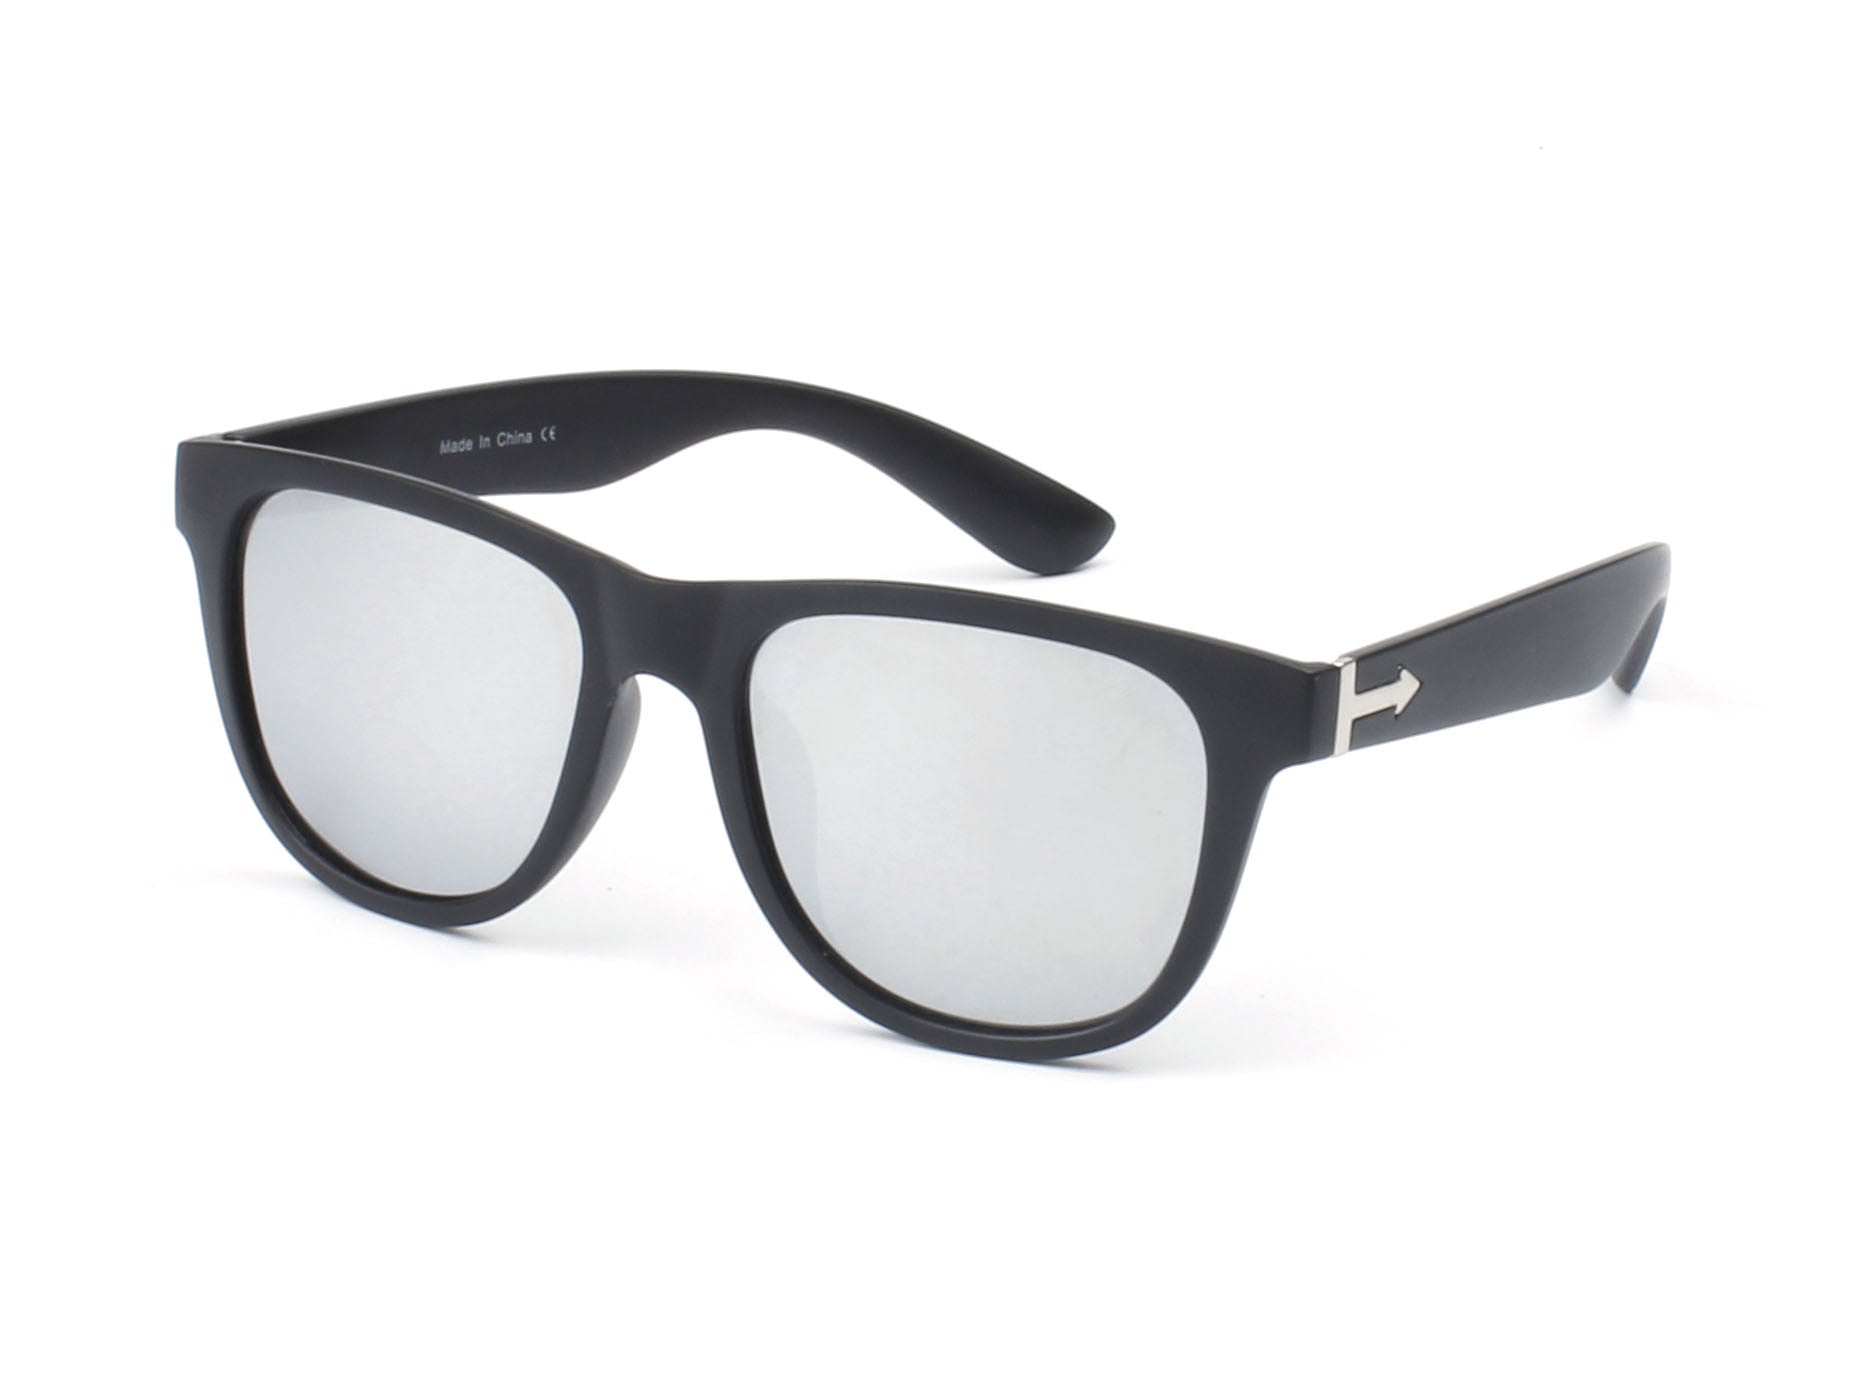 PD02 - Classic Square Retro Polarized Sunglasses Silver